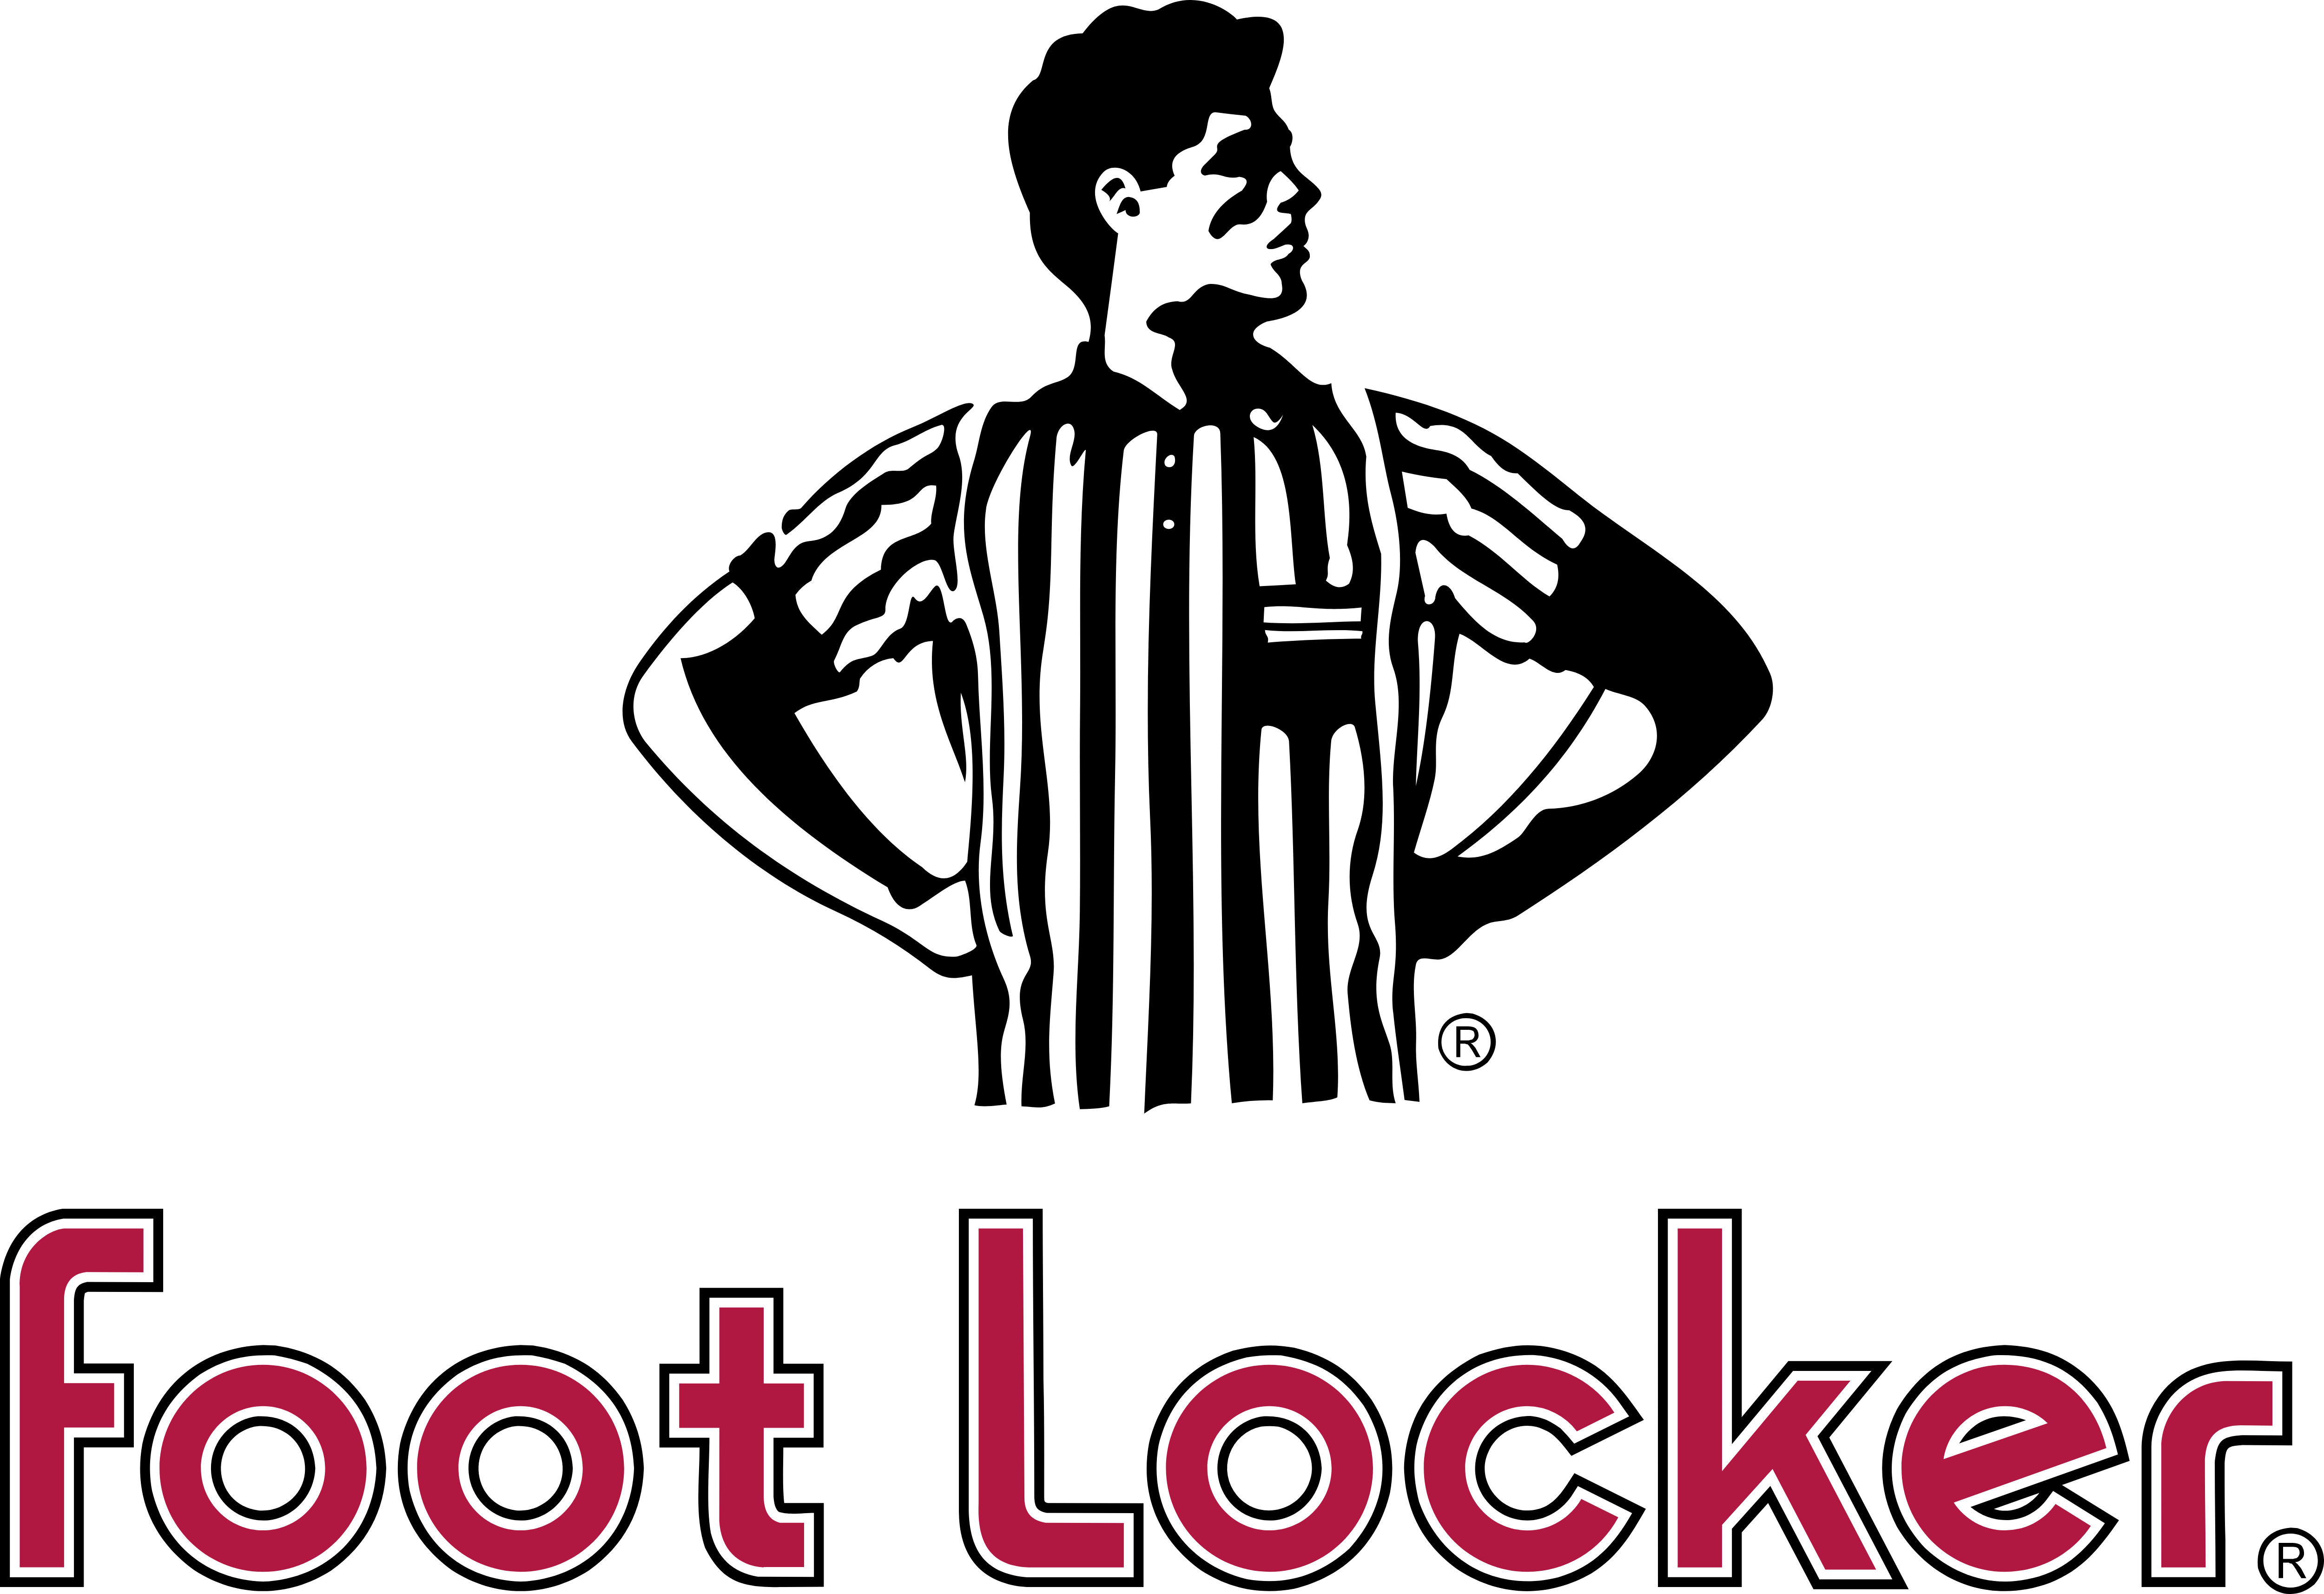 Foot Locker Logo - Foot Locker – Logos Download